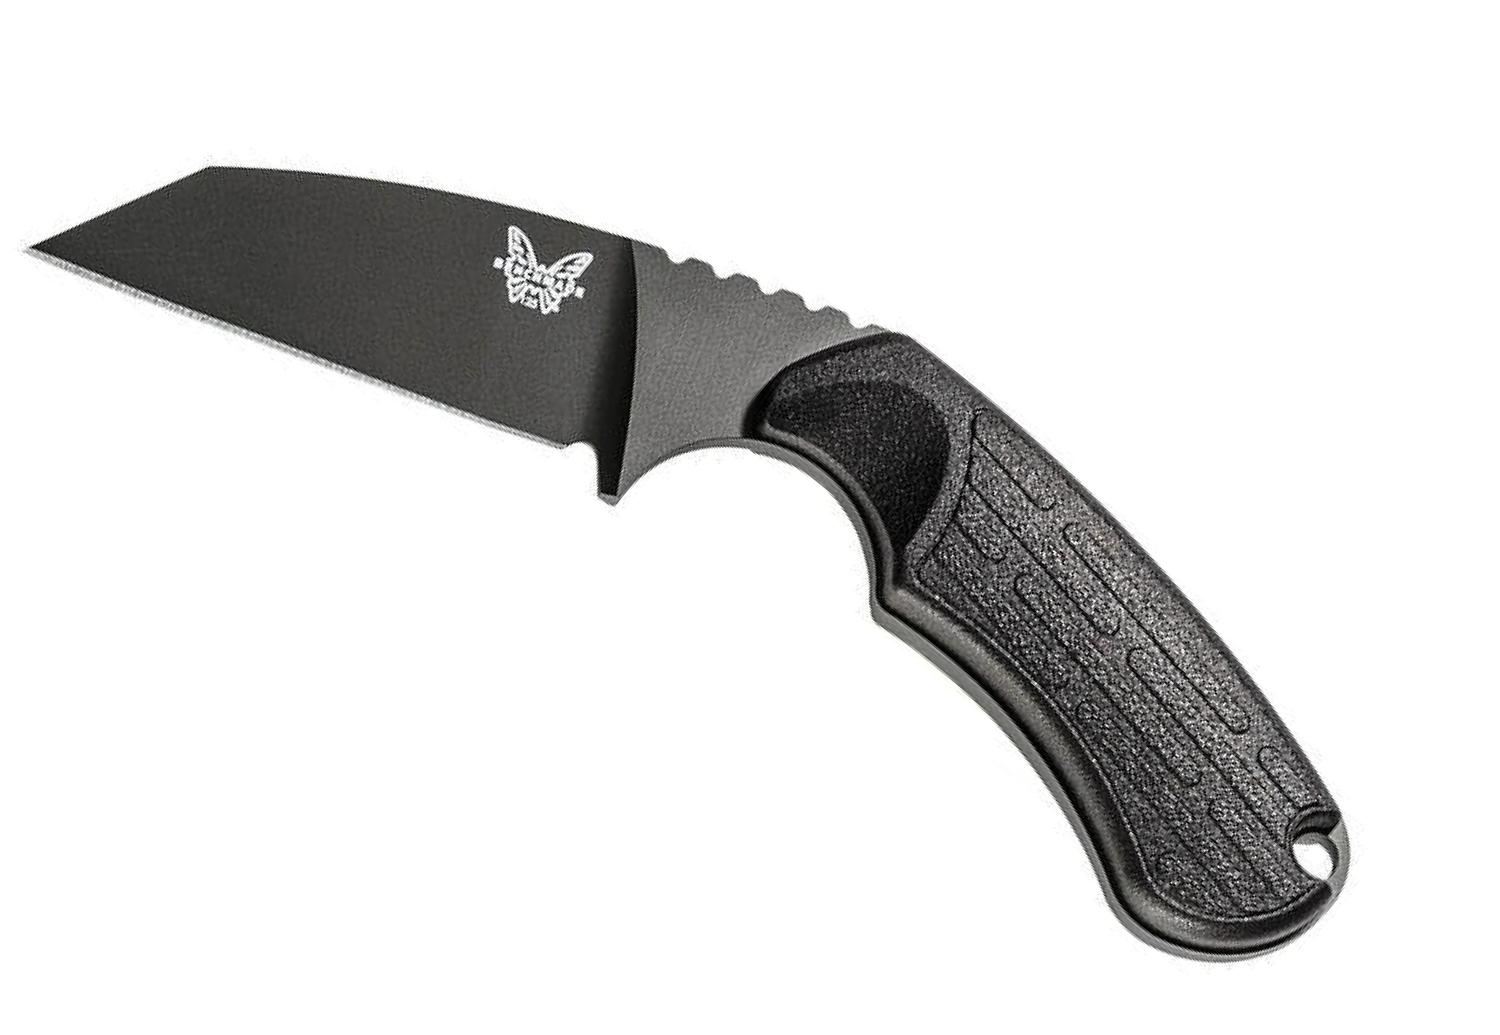  125 Azeria Fixed Blade Knife 2.9in N680 Black/Black